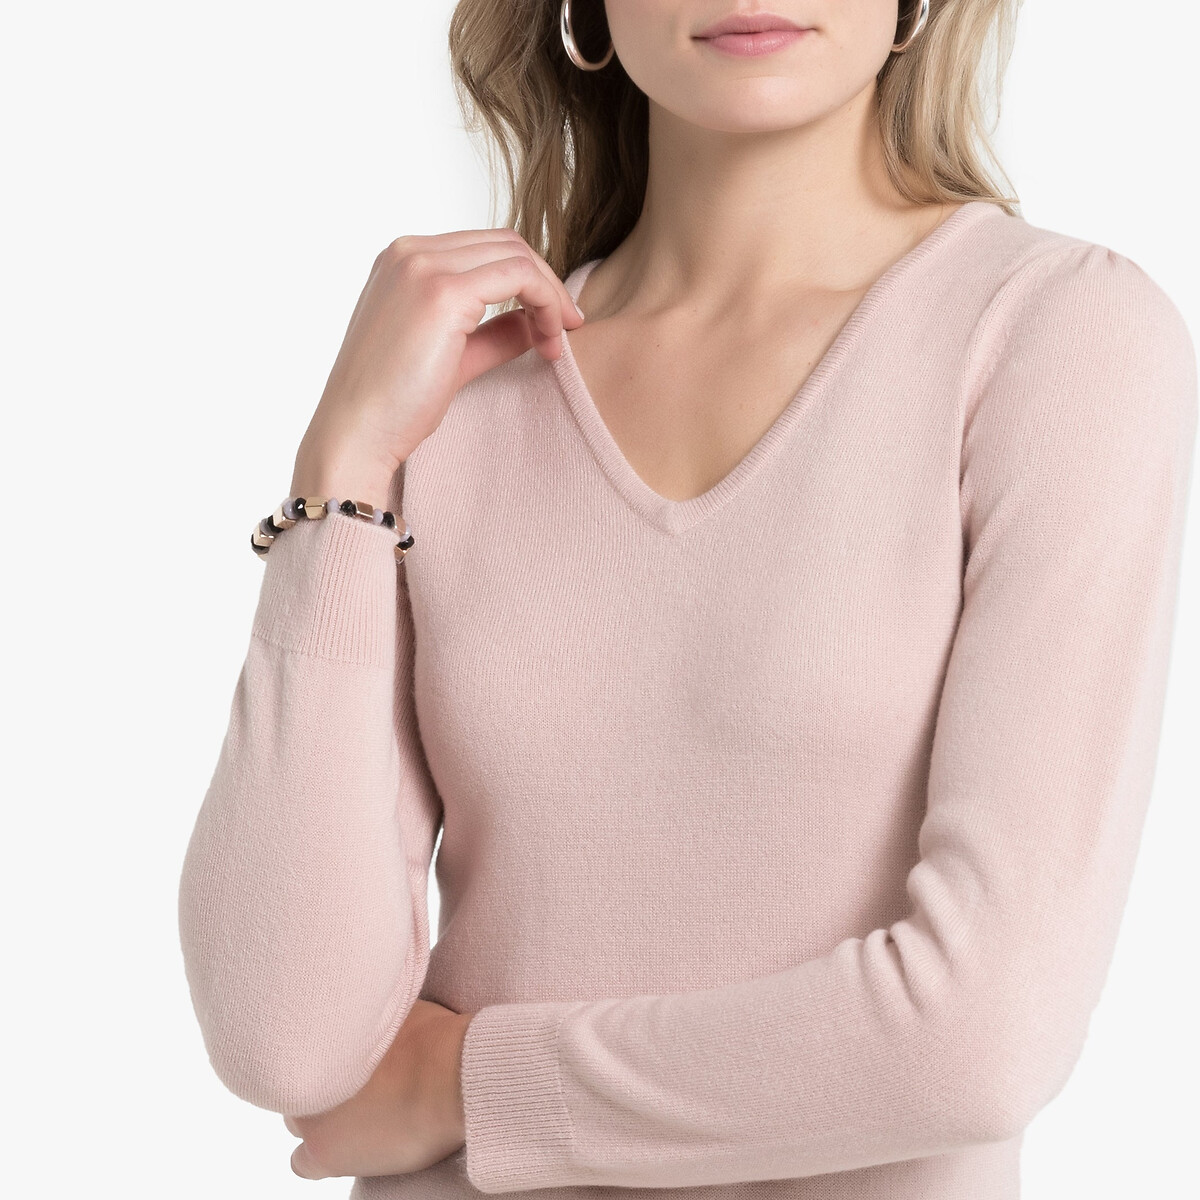 Пуловер La Redoute С V-образным вырезом из тонкого трикотажа 50/52 (FR) - 56/58 (RUS) розовый, размер 50/52 (FR) - 56/58 (RUS) С V-образным вырезом из тонкого трикотажа 50/52 (FR) - 56/58 (RUS) розовый - фото 3